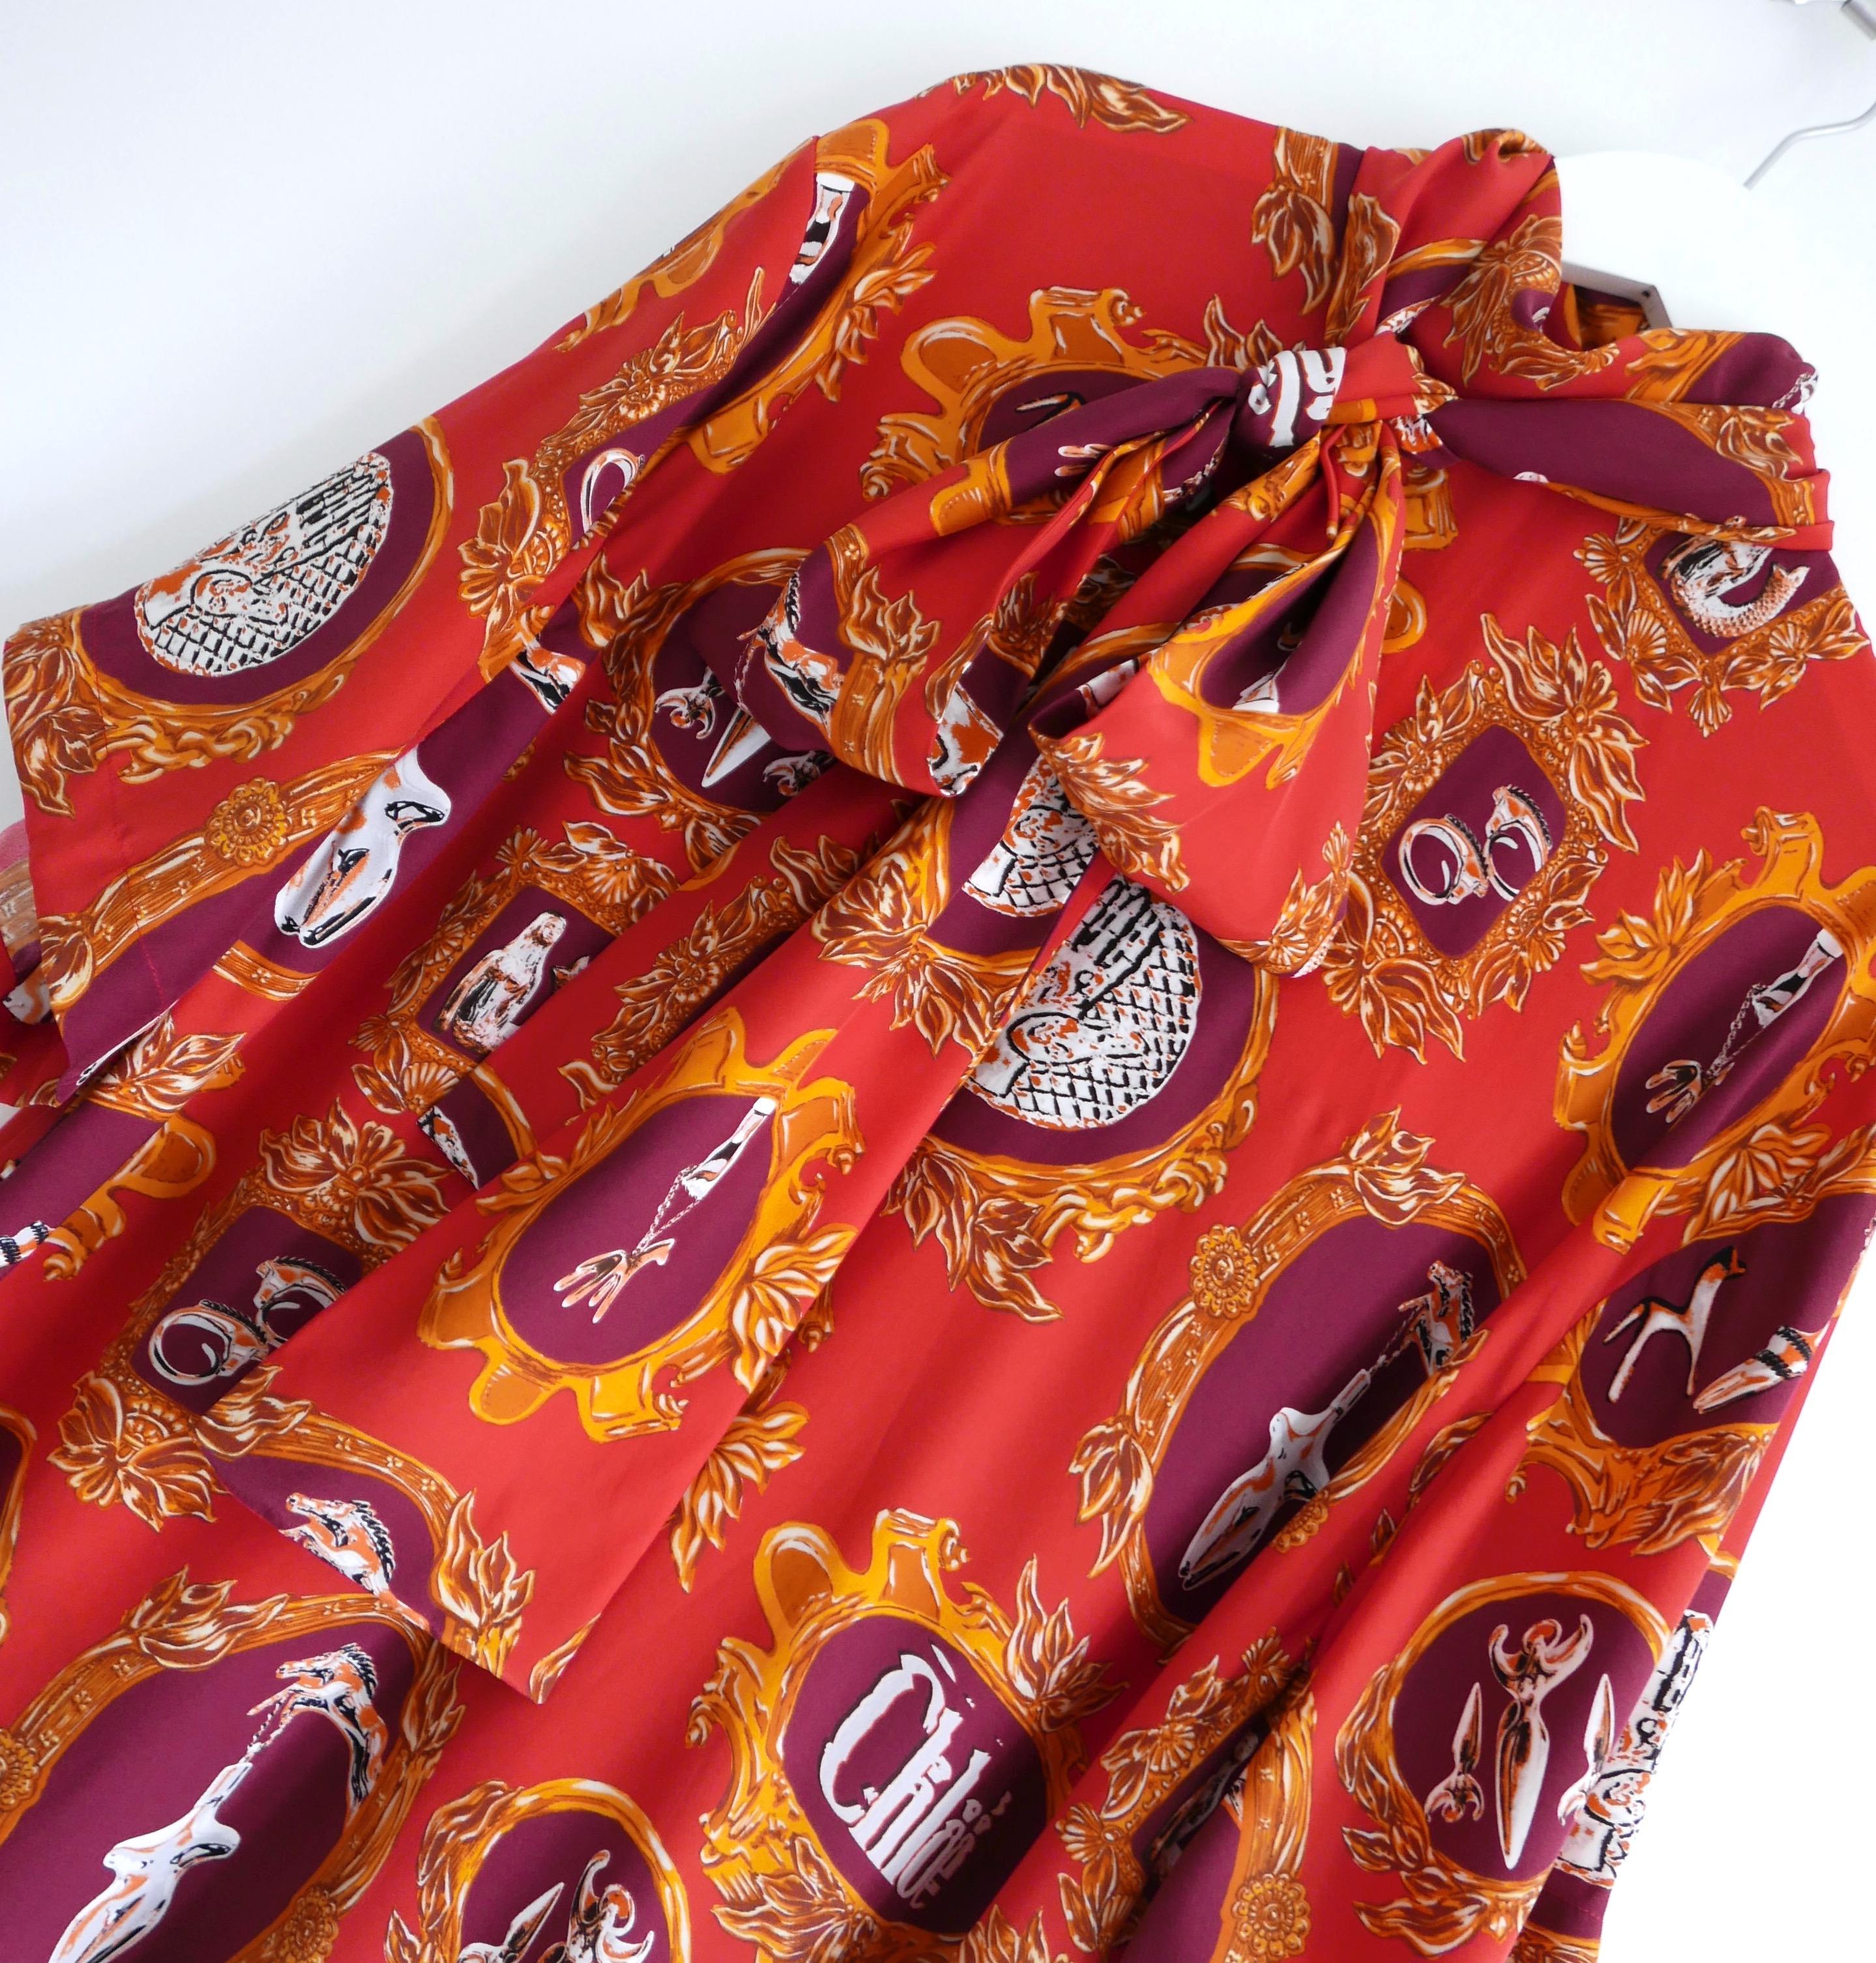 Étonnante blouse à foulard à imprimé camée Chloe, issue de la collection Pre-Fall 2019. Il a figuré dans plusieurs looks du défilé. Acheté pour £1750 et neuf avec étiquettes/bouton d'étain. Confectionnée en soie rouge cornaline imprimée de camées 